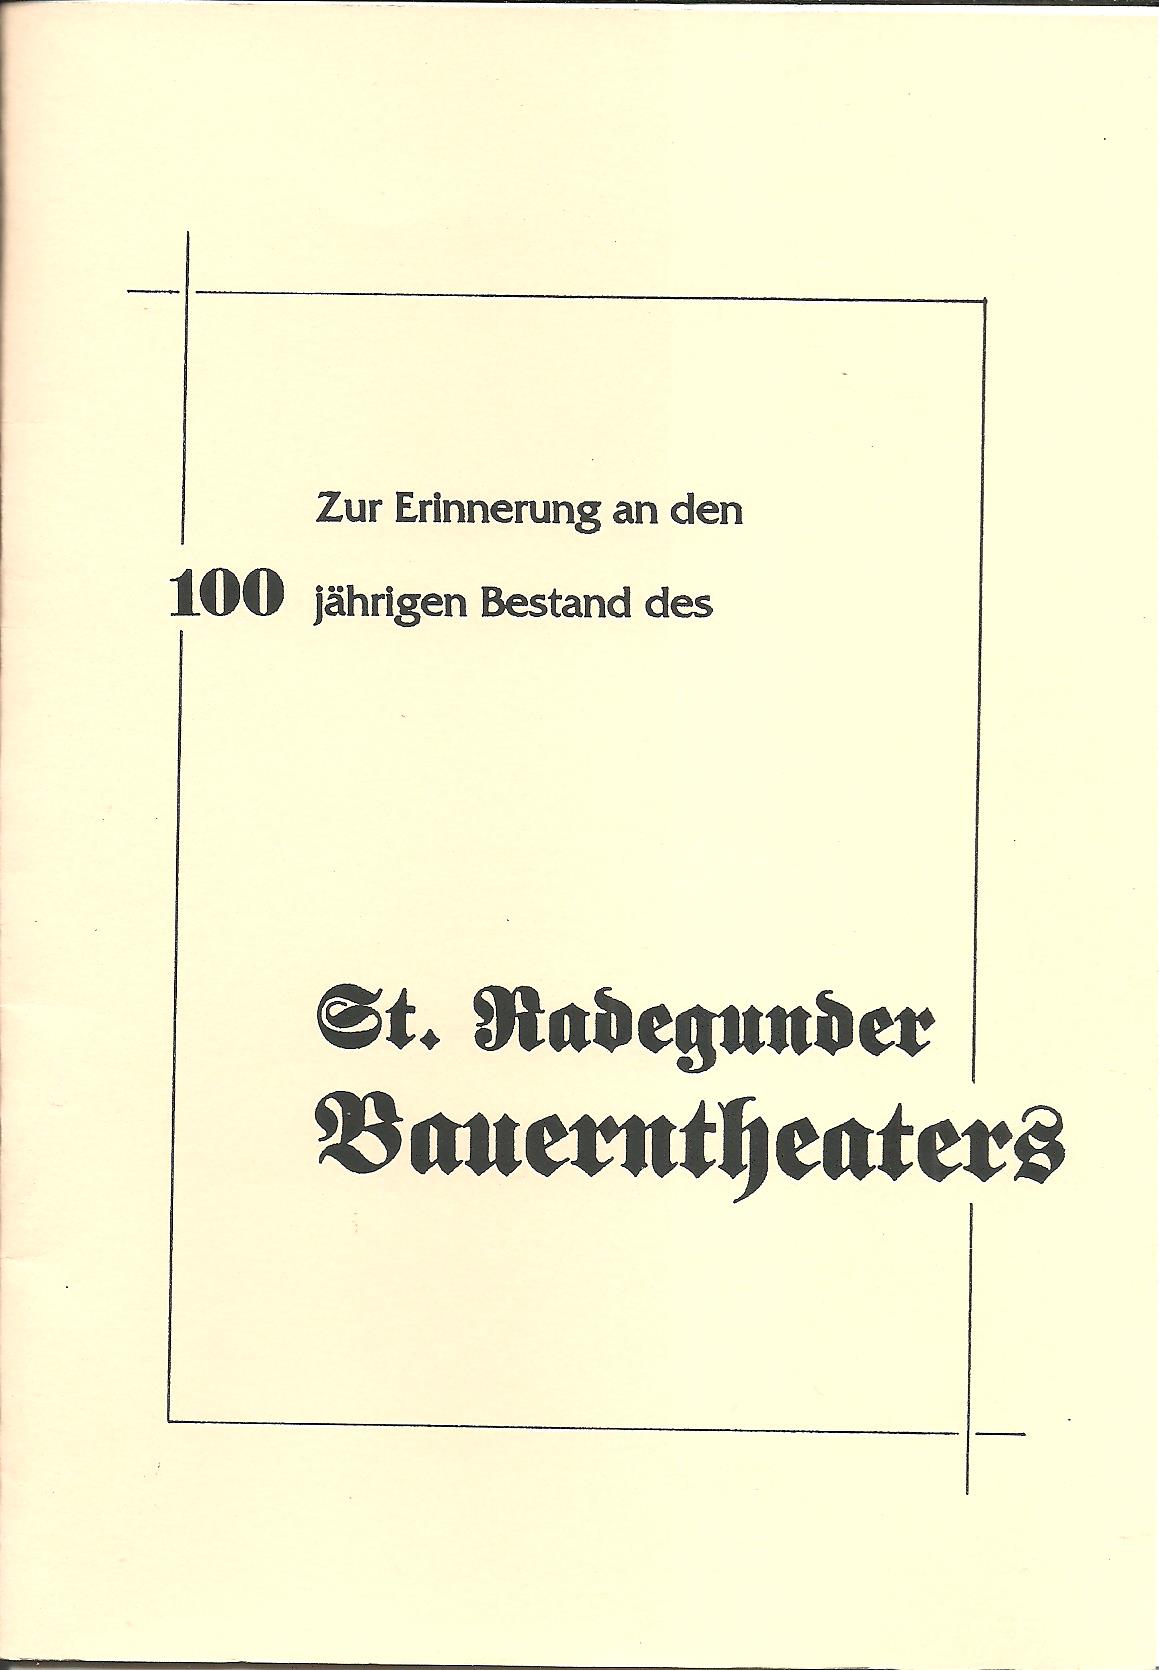 100 jährigen Bestand des St. Radegunder Bauerntheaters